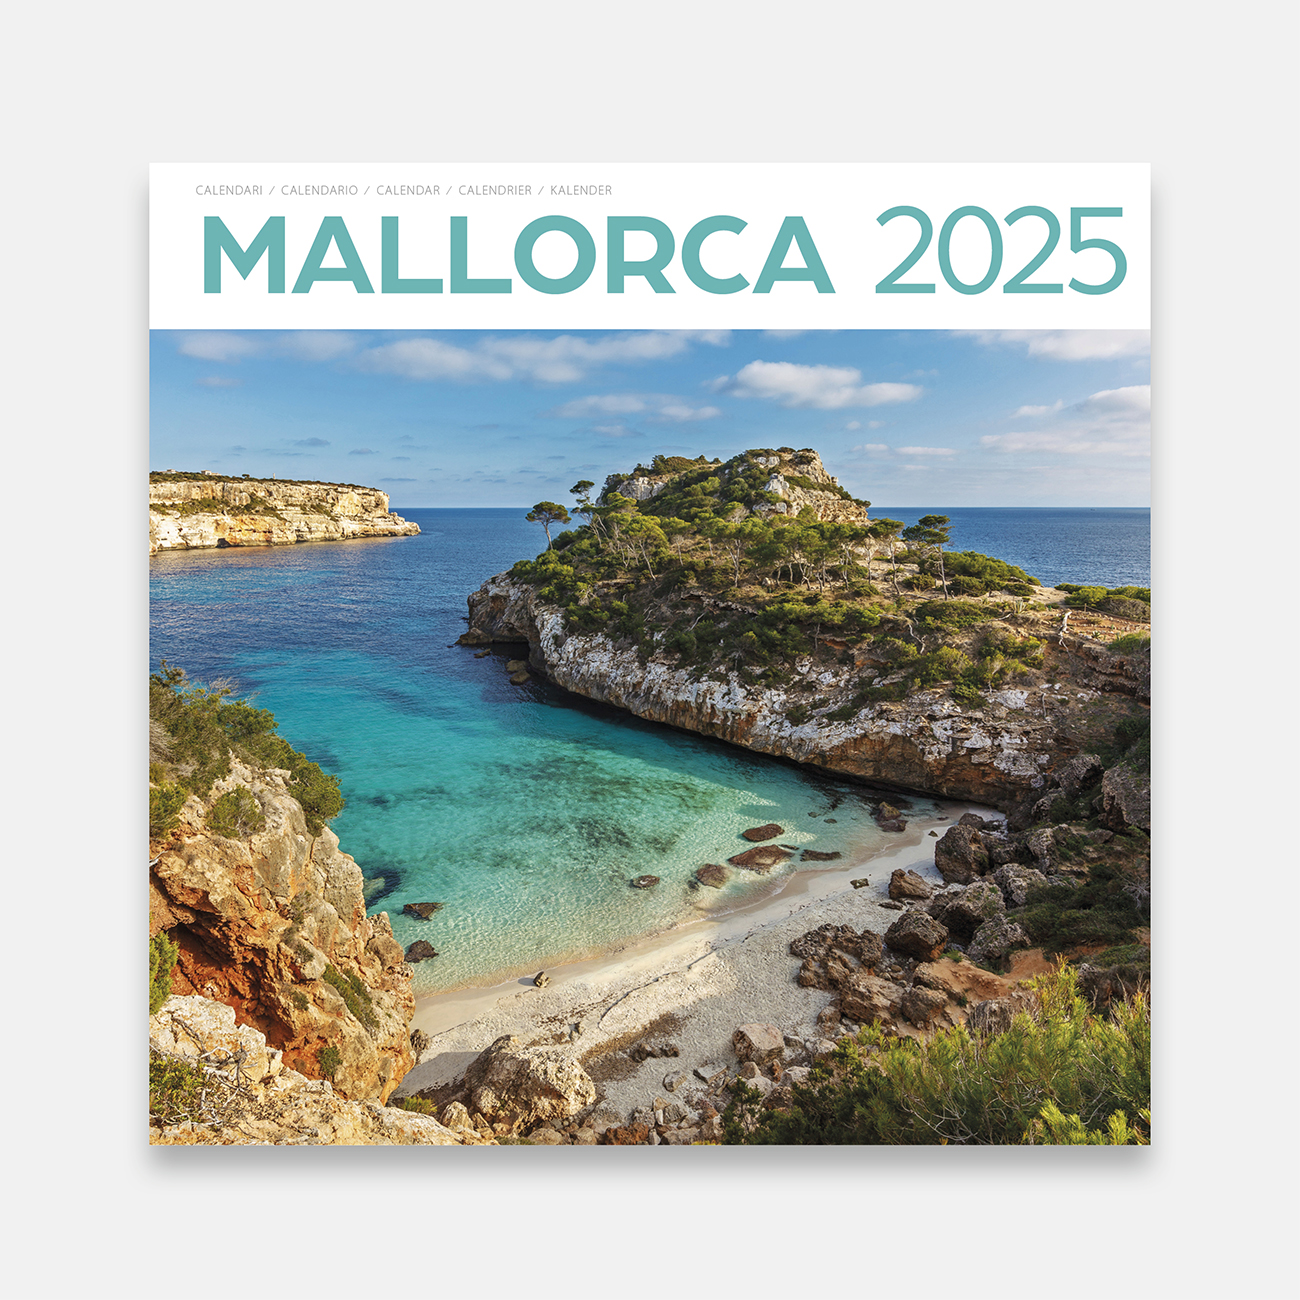 Calendar 2025 Mallorca 25ma1 calendario pared 2025 mallorca